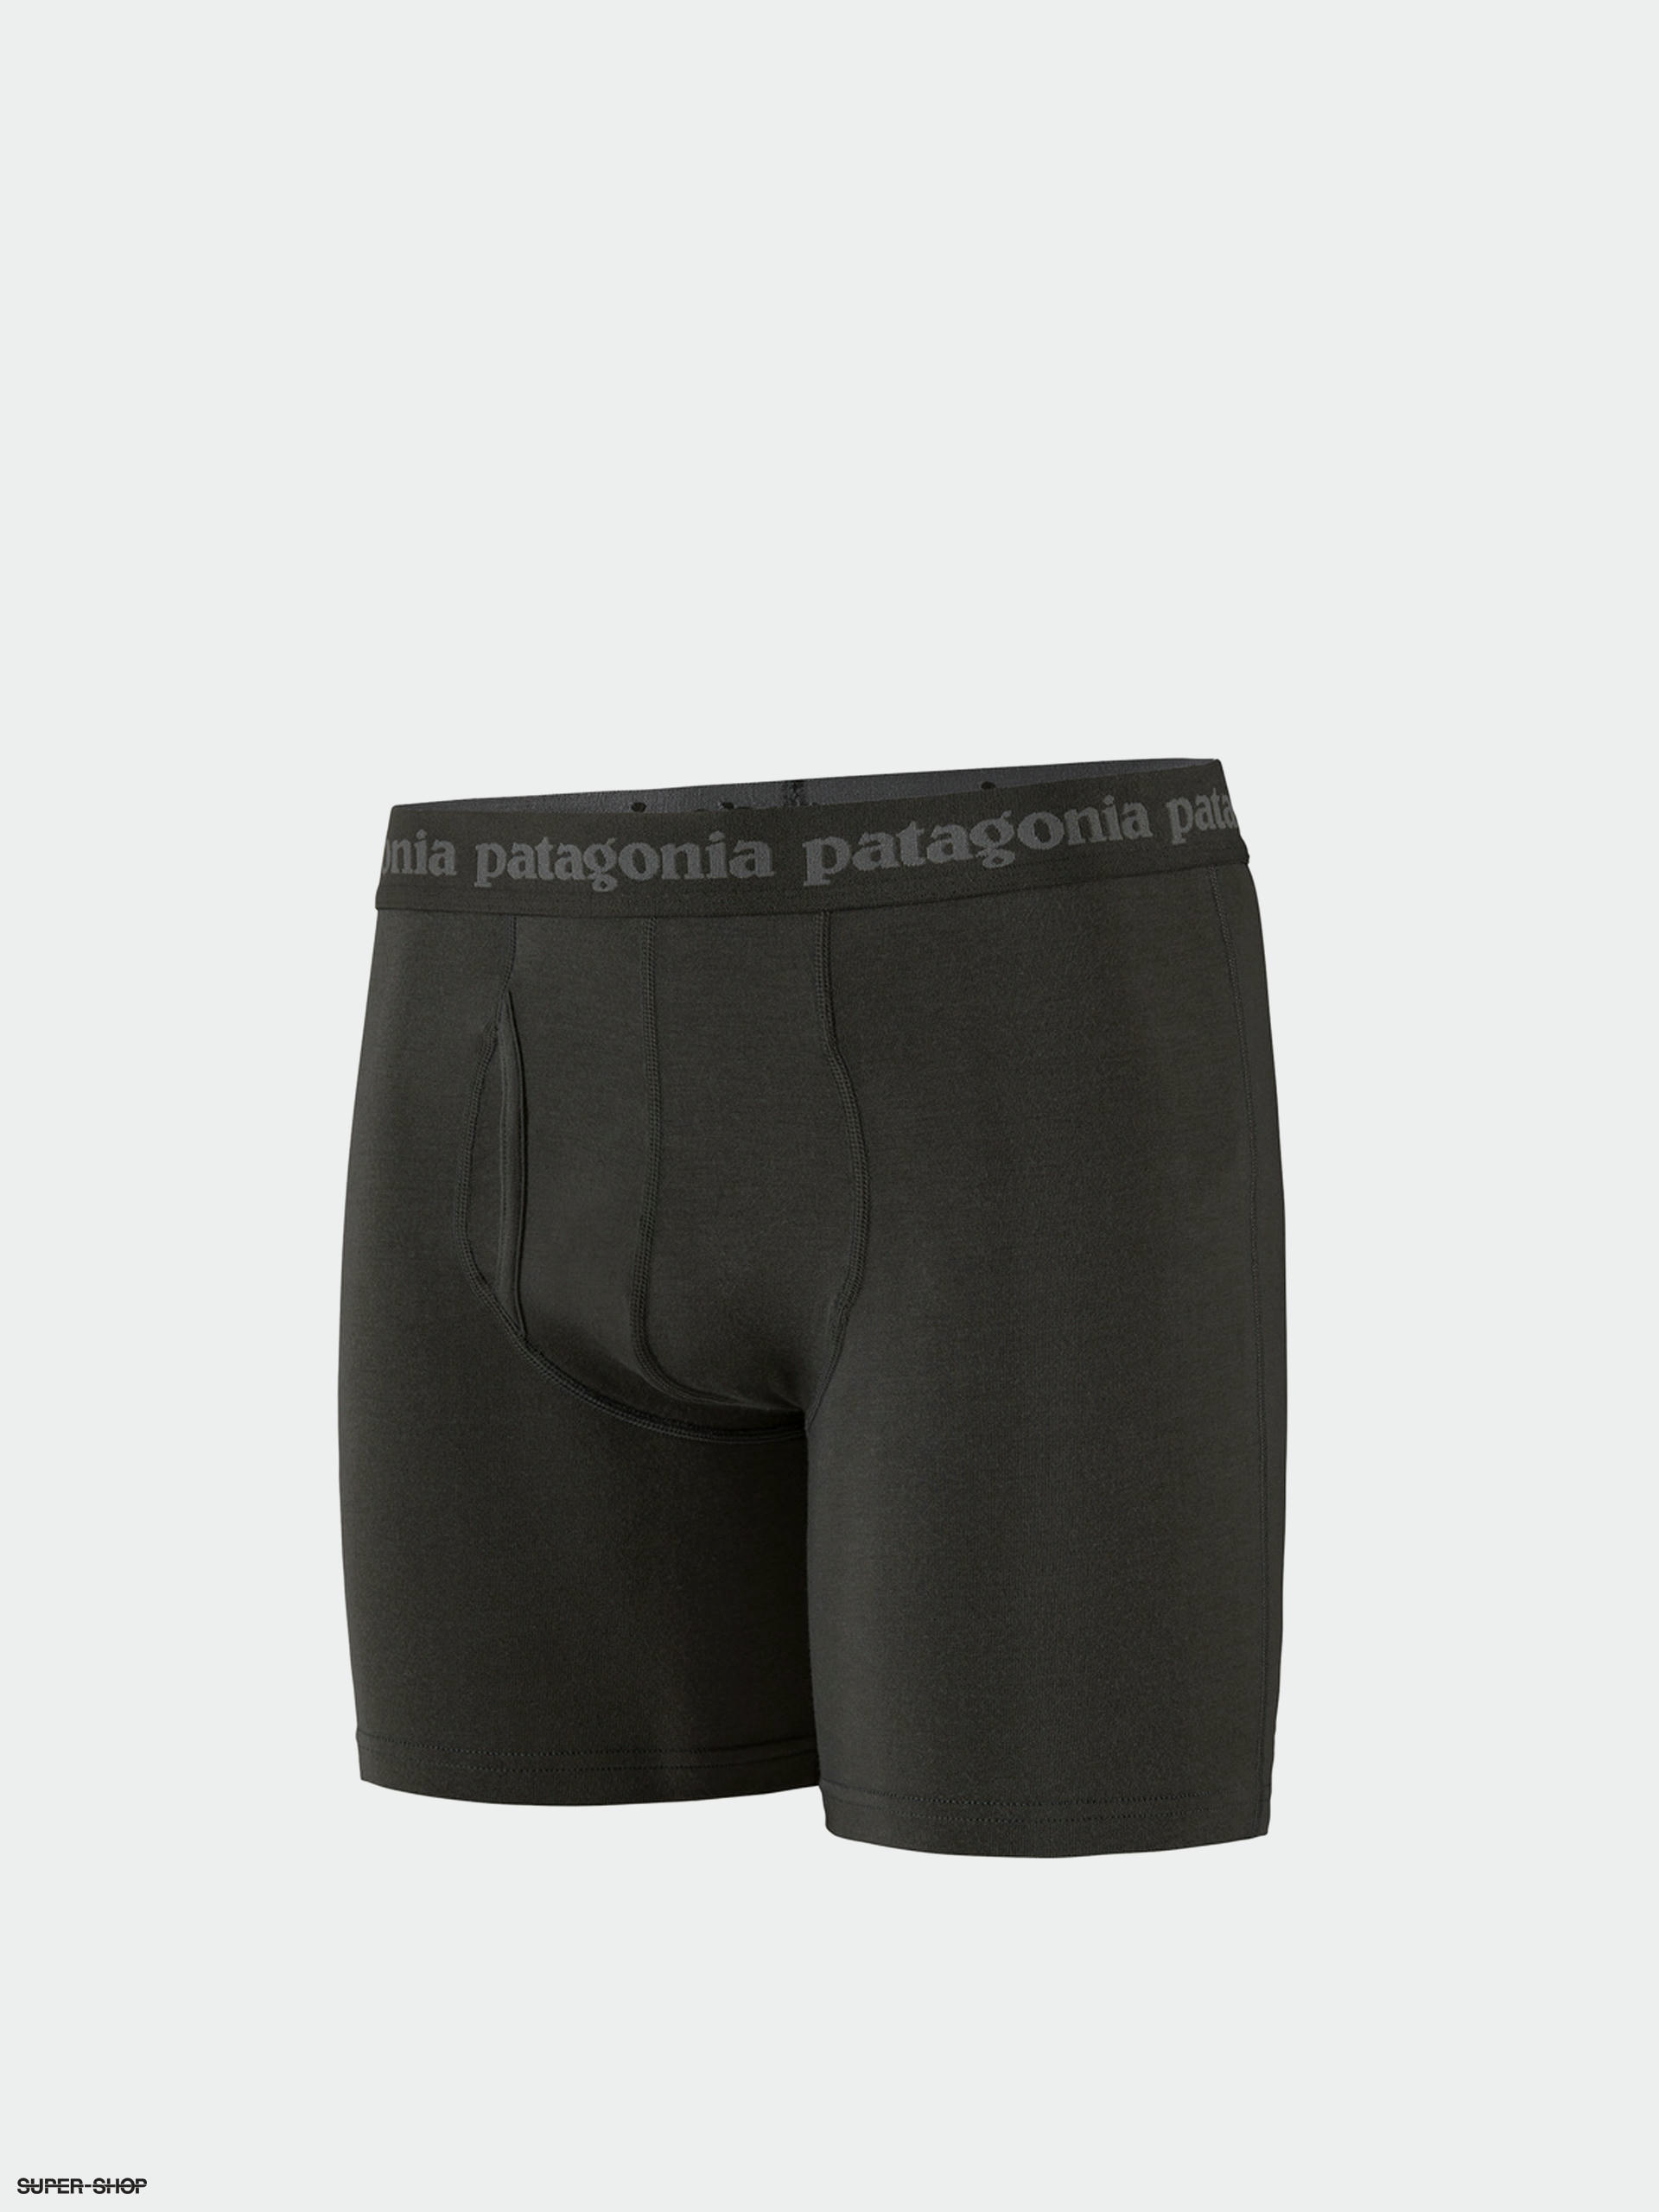 Patagonia Bokserki Essential Briefs 6 in Underwear (black)